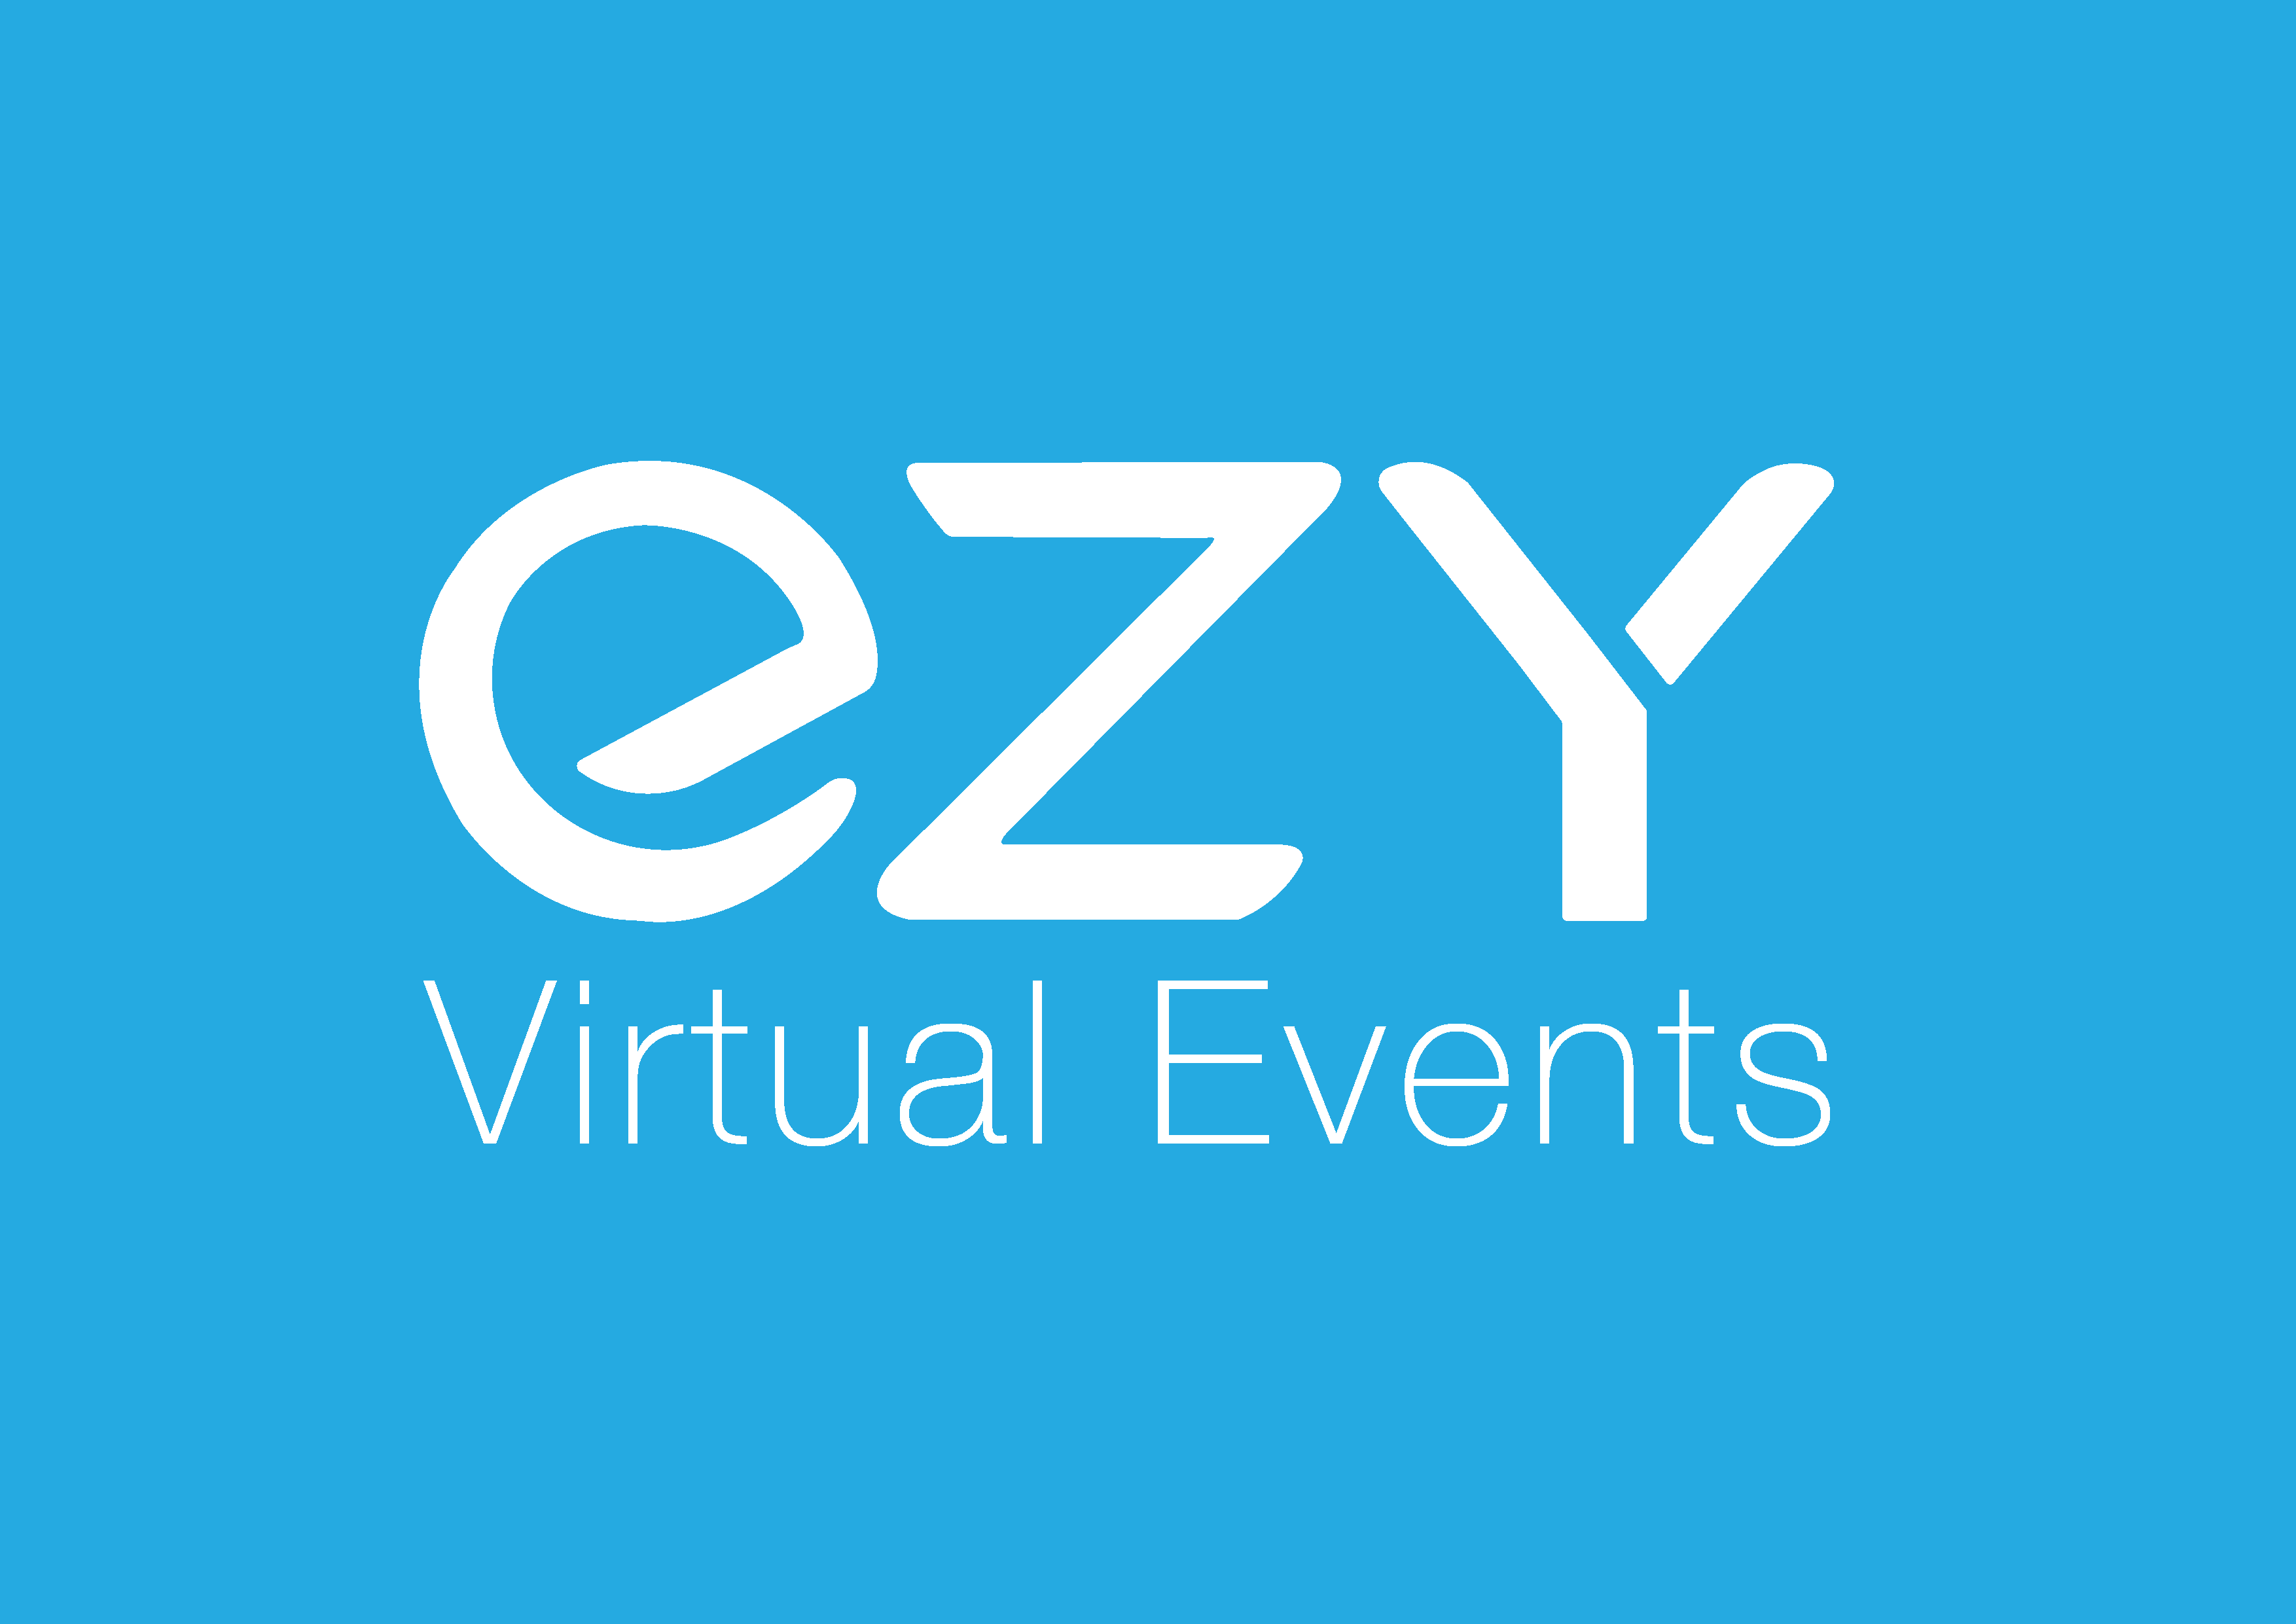 Copy of Copy of EZYblue - Ezy Virtual Events